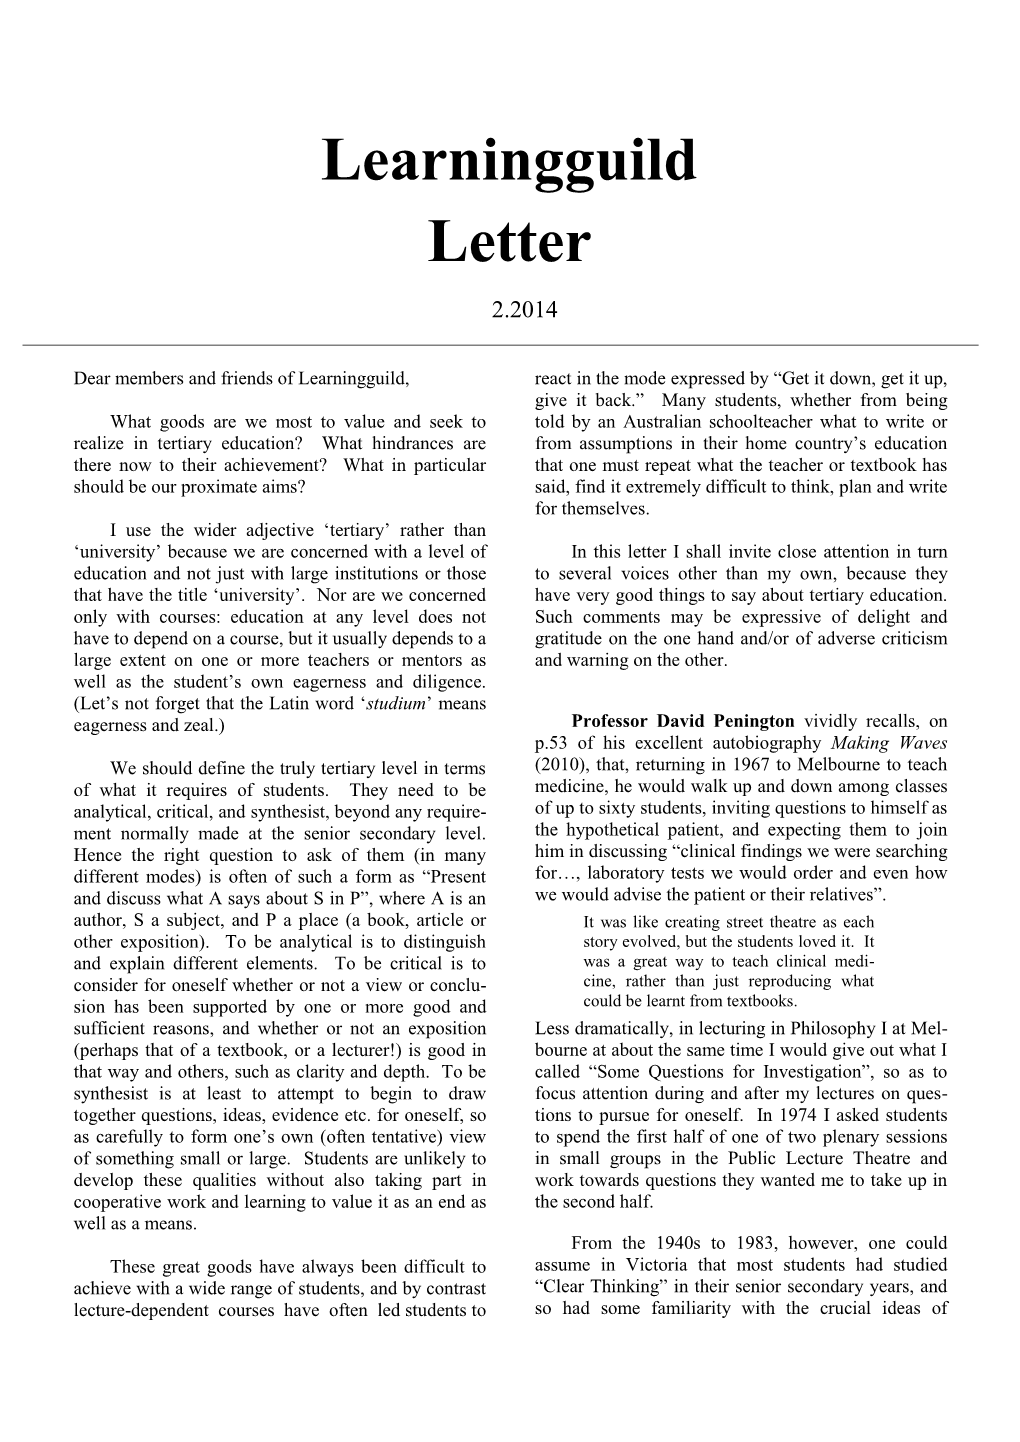 Learningguild Letter 2.2014